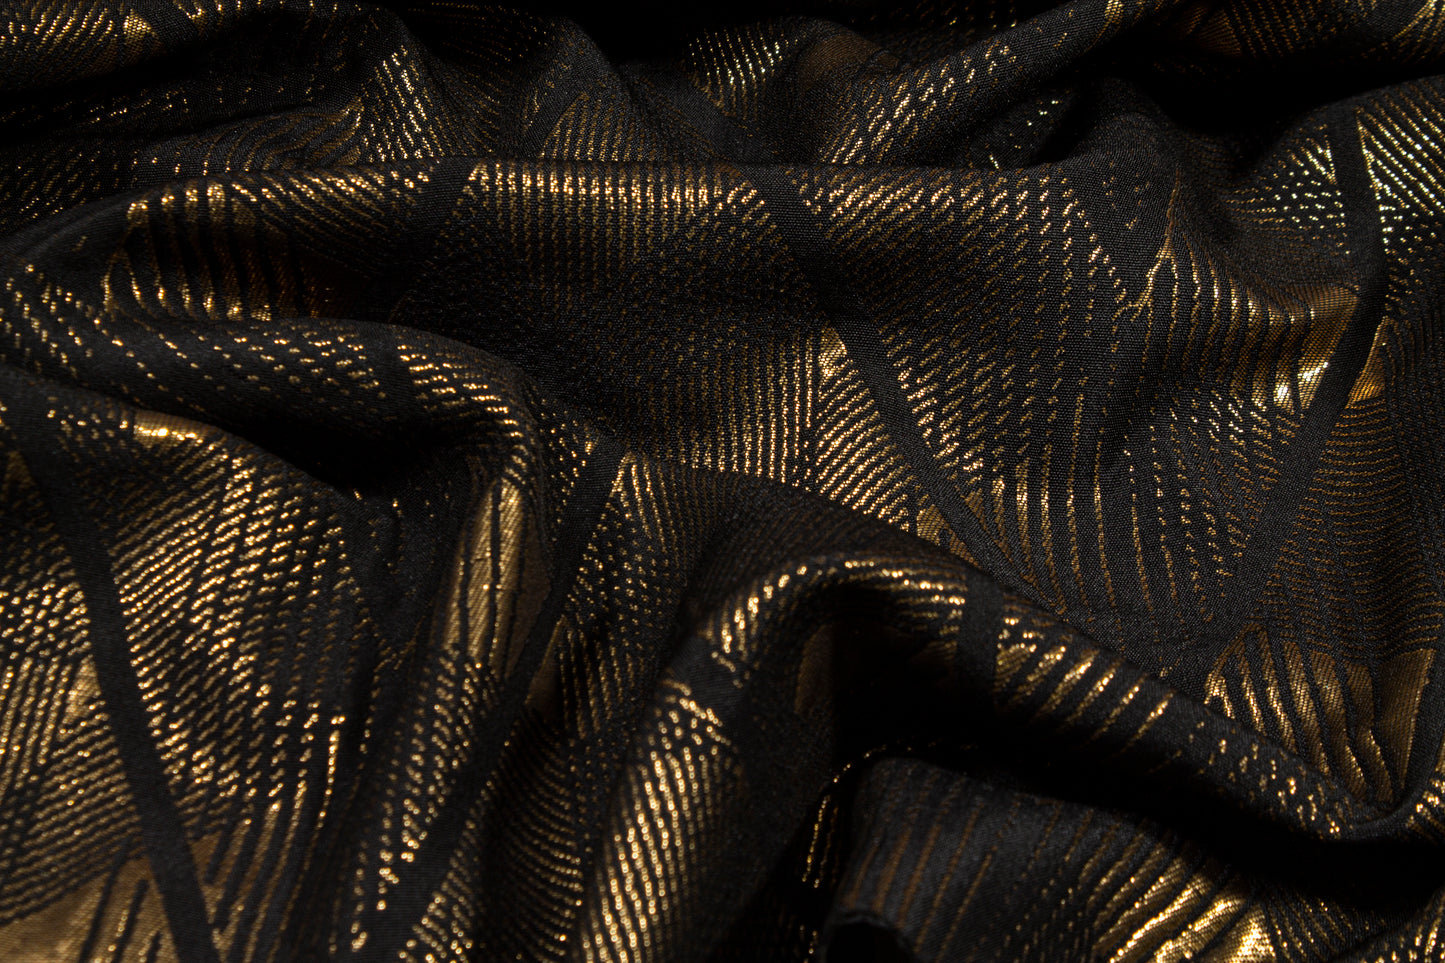 Geometric Metallic Brocade - Gold and Black